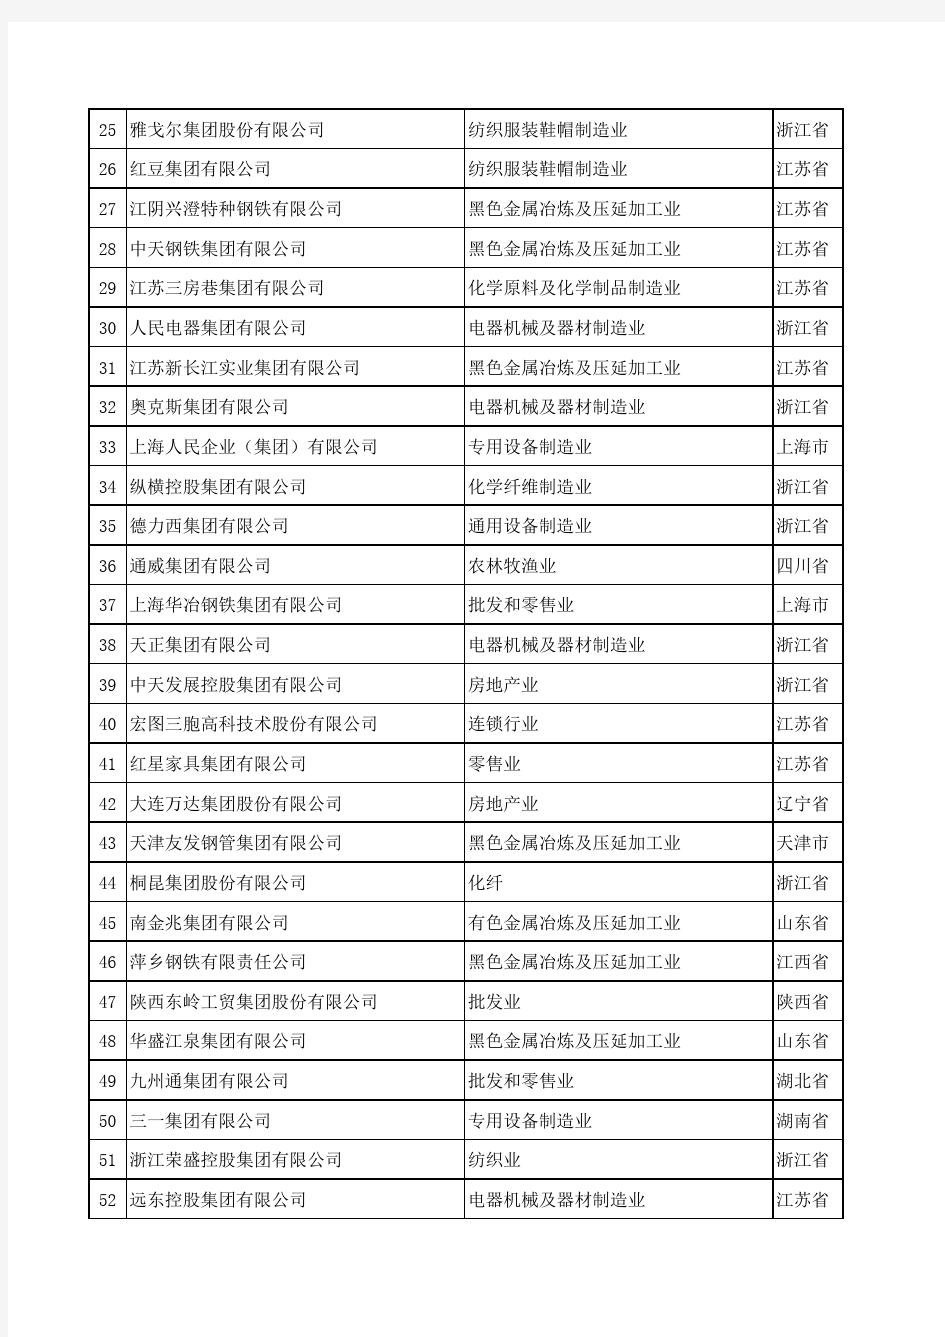 2008年中国民营企业500强排名